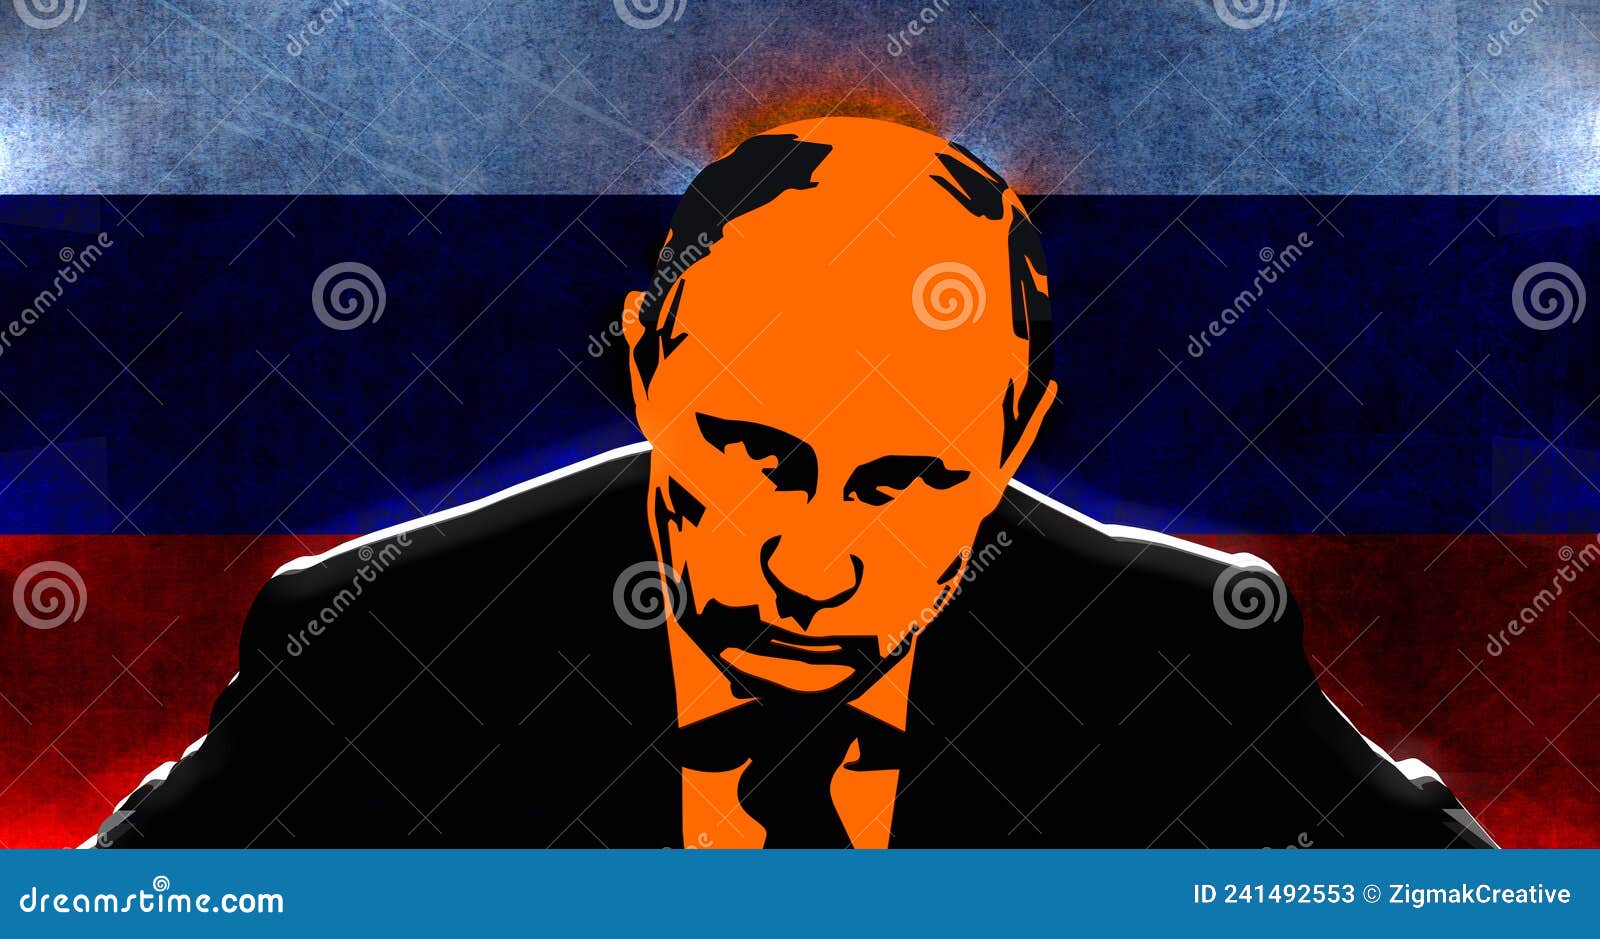 Vladimir Putin Best President Wallpaper for iPhone XR